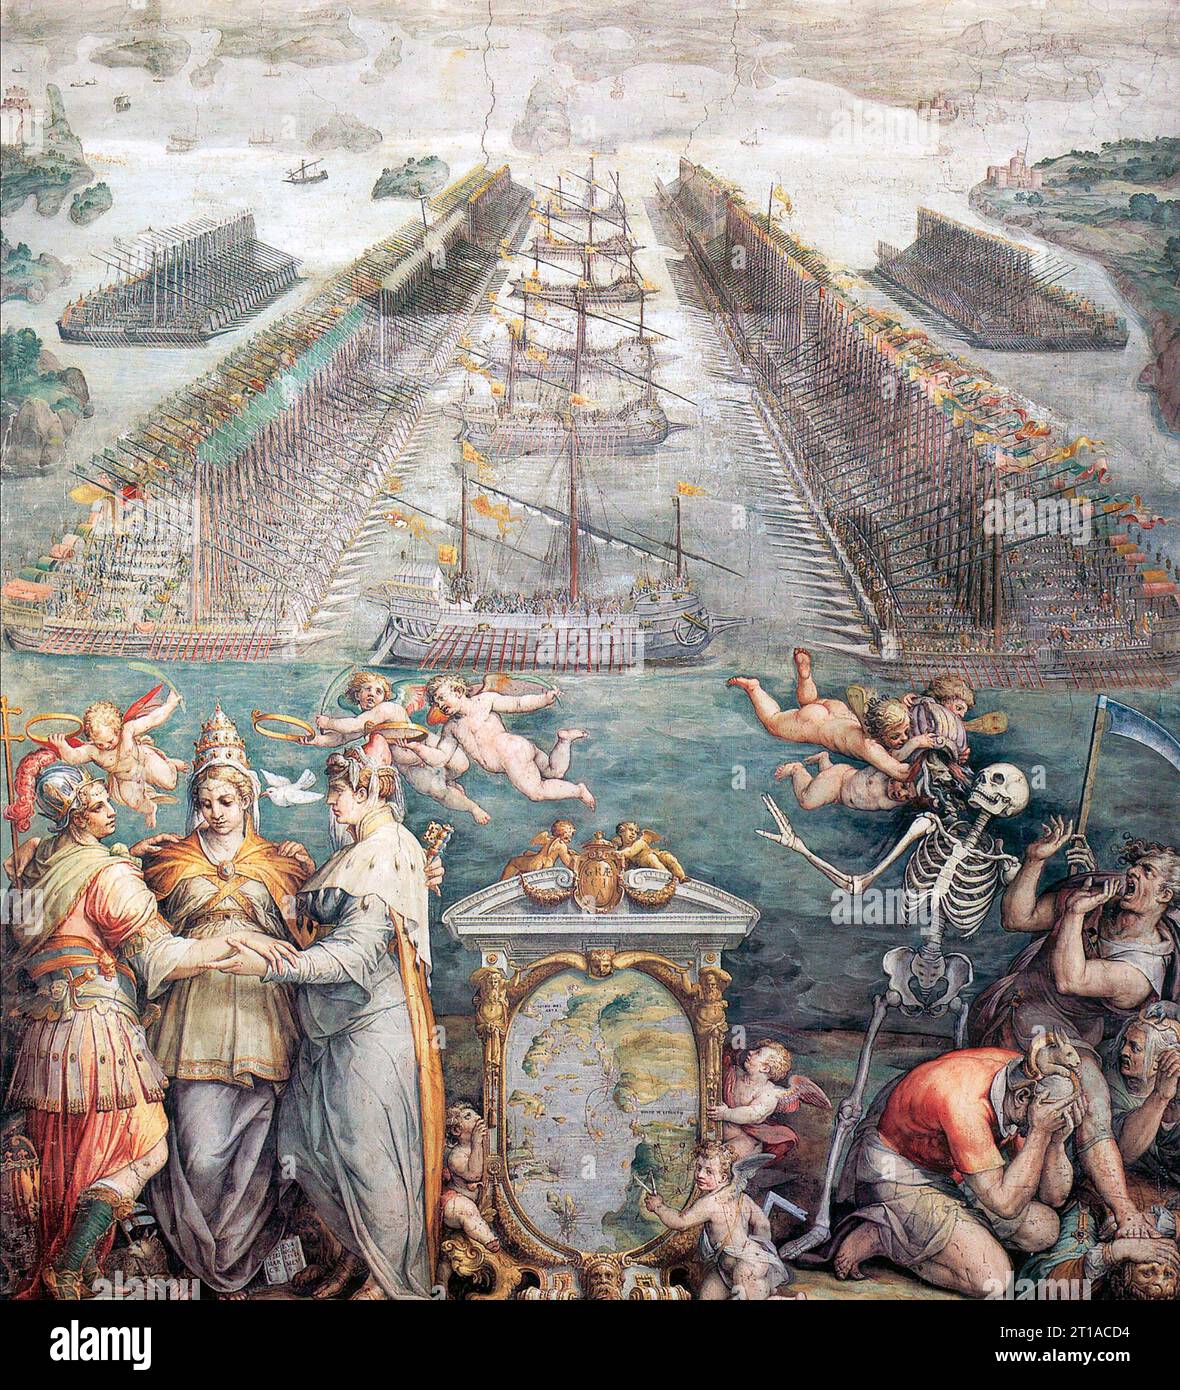 SCHLACHT VON LEPANTO am 7. Oktober 1571 in einem Fresko von Giorgio Vasari aus dem Jahr 1572. Die drei Mitglieder der Heiligen Liga sind als Allegorie unten links dargestellt Stockfoto